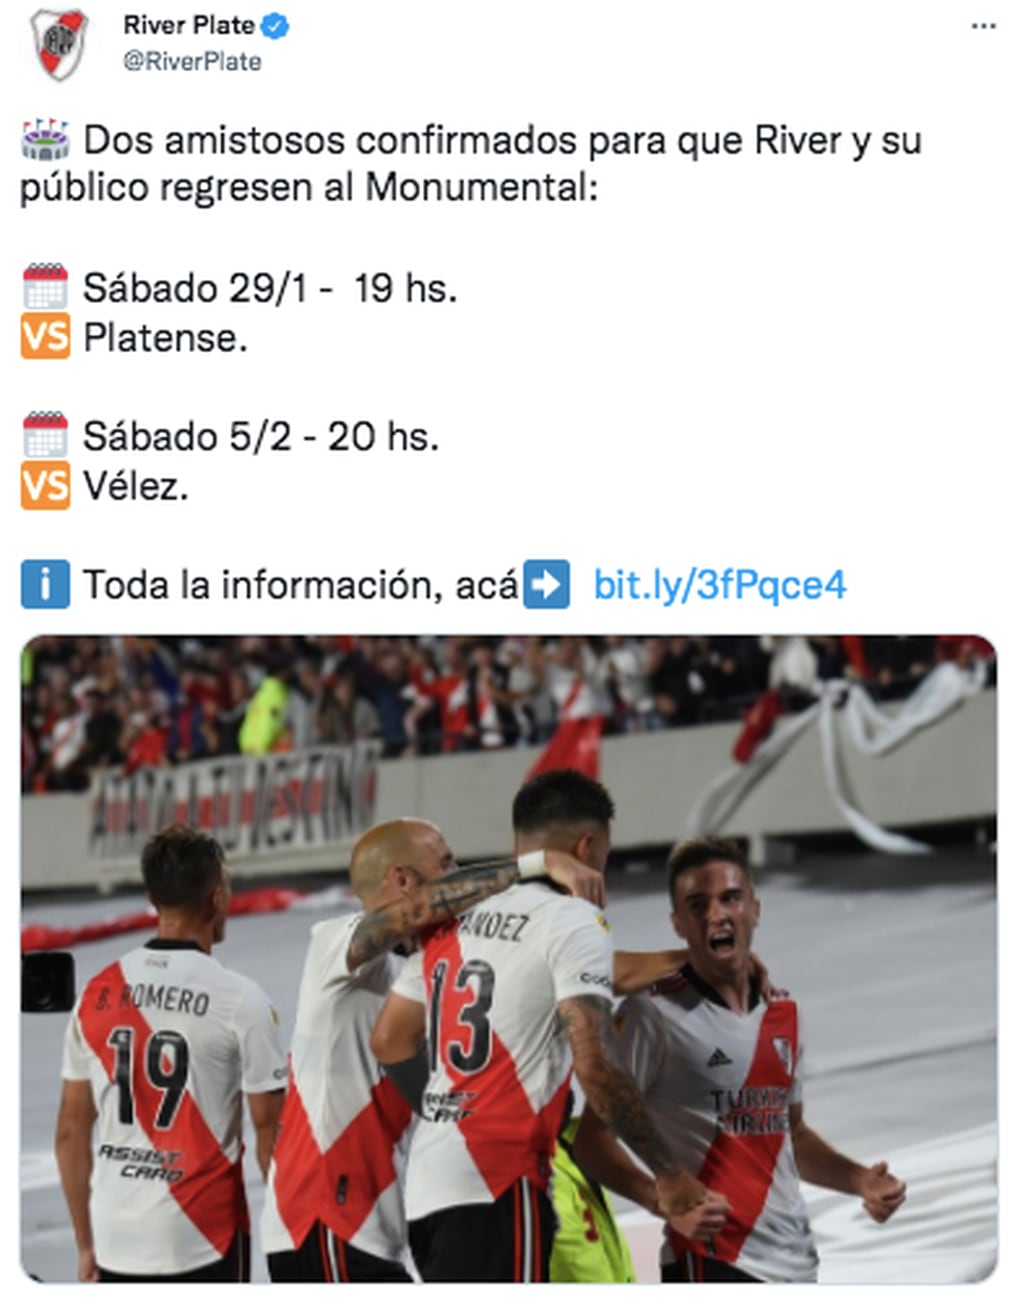 Platense y Vélez serán los rivales de River en los amistosos programados en el Monumental.